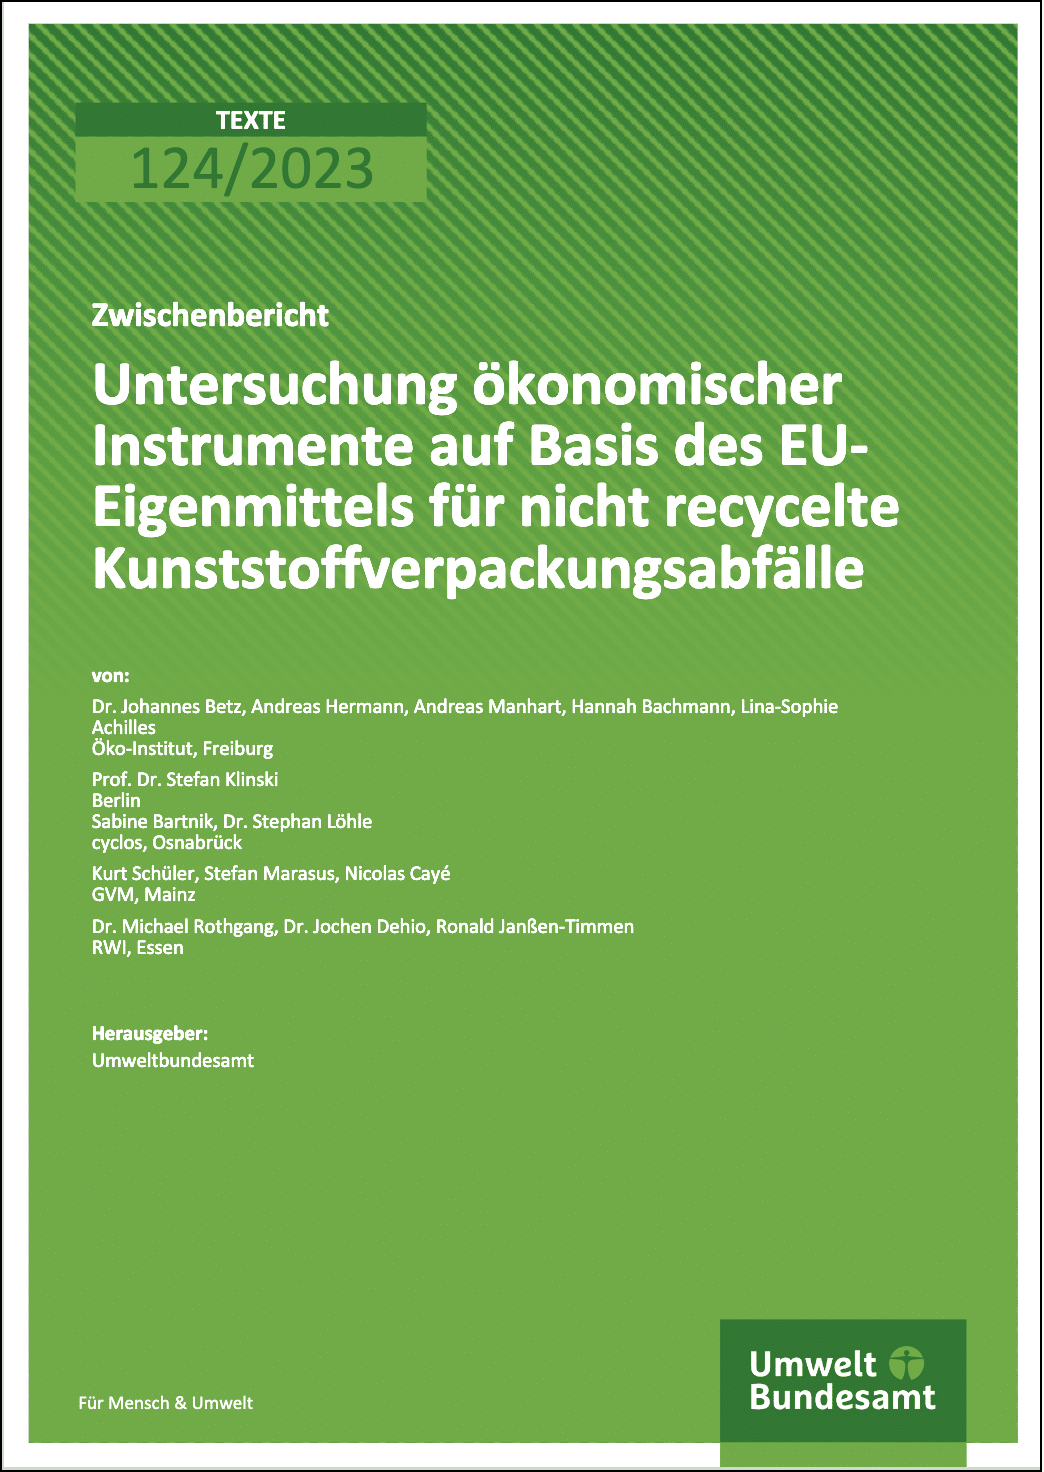 Untersuchung ökonomischer Instrumente auf Basis des EU-Eigenmittels für nicht recycelte Kunststoffverpackungsabfälle.